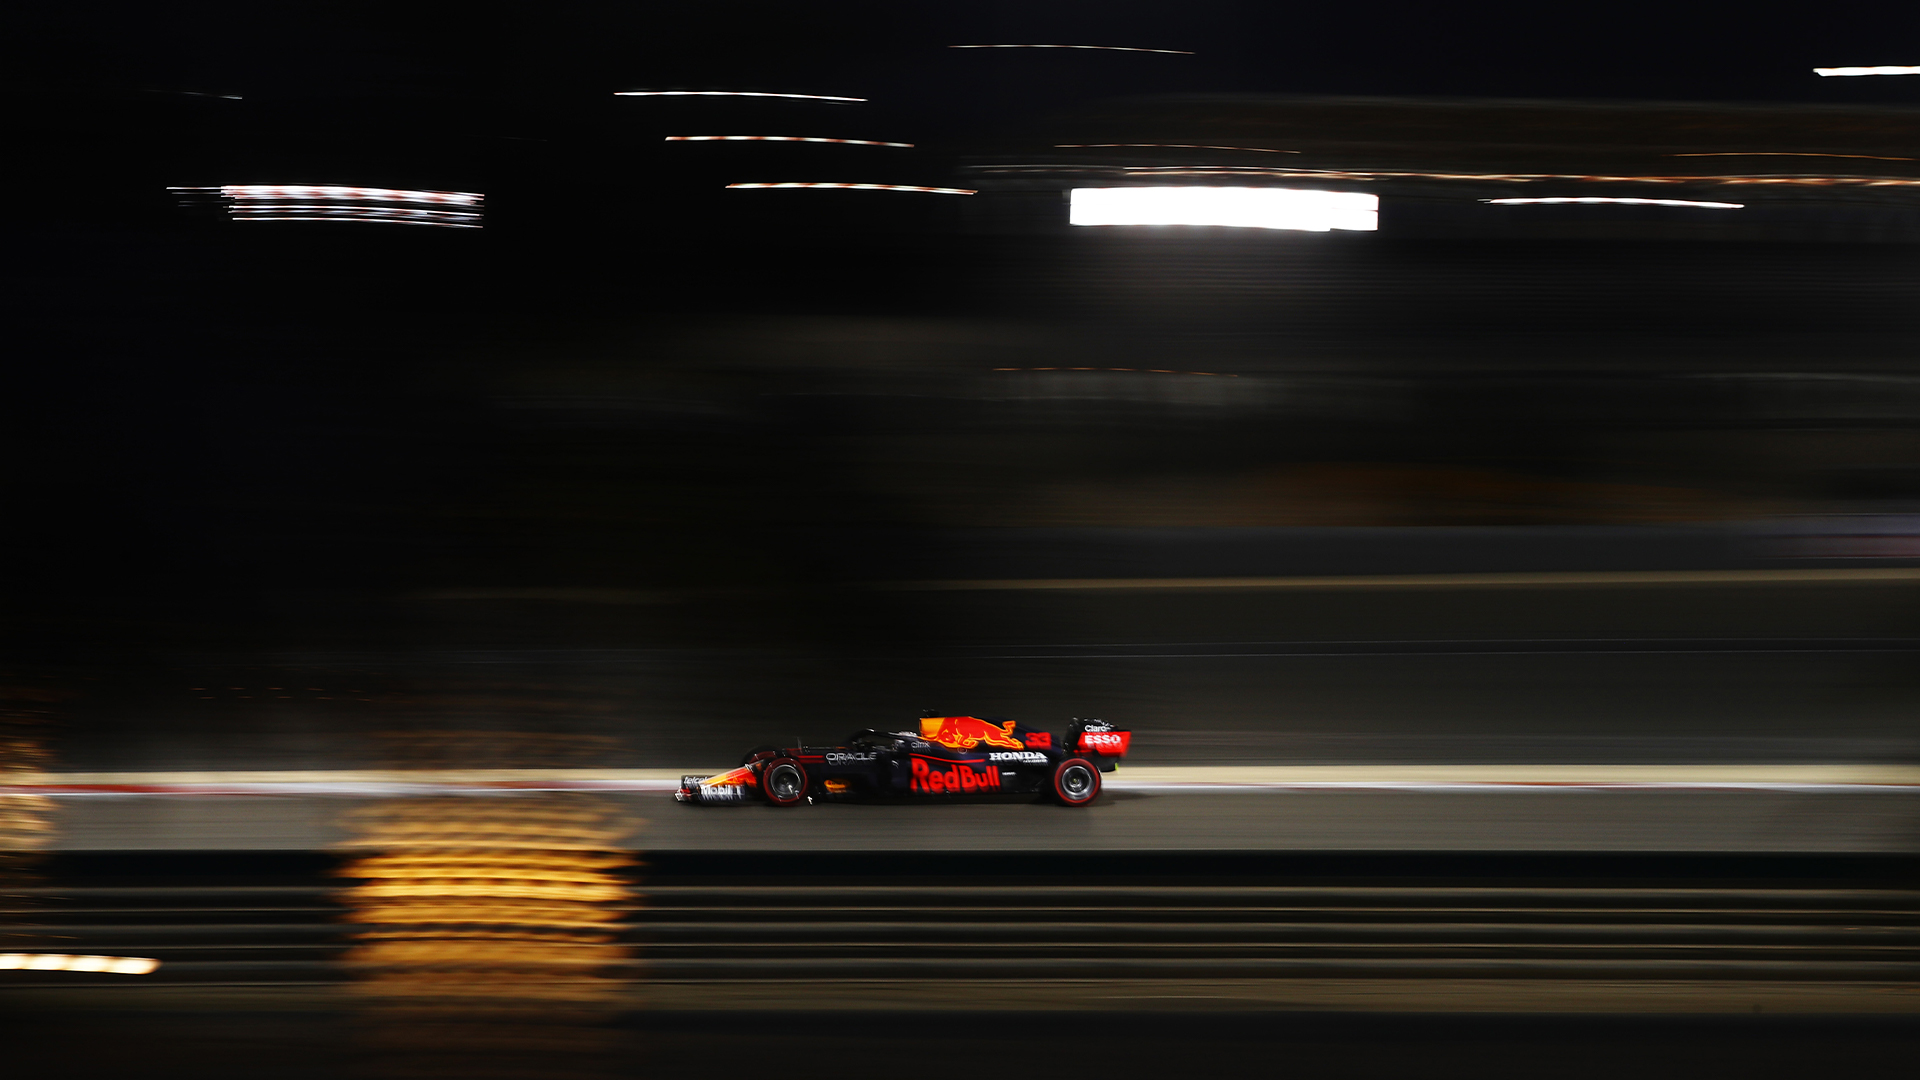 Макс Верстаппен выиграл поул перед Гран-при Бахрейна 2021 года, Мазепин – последний